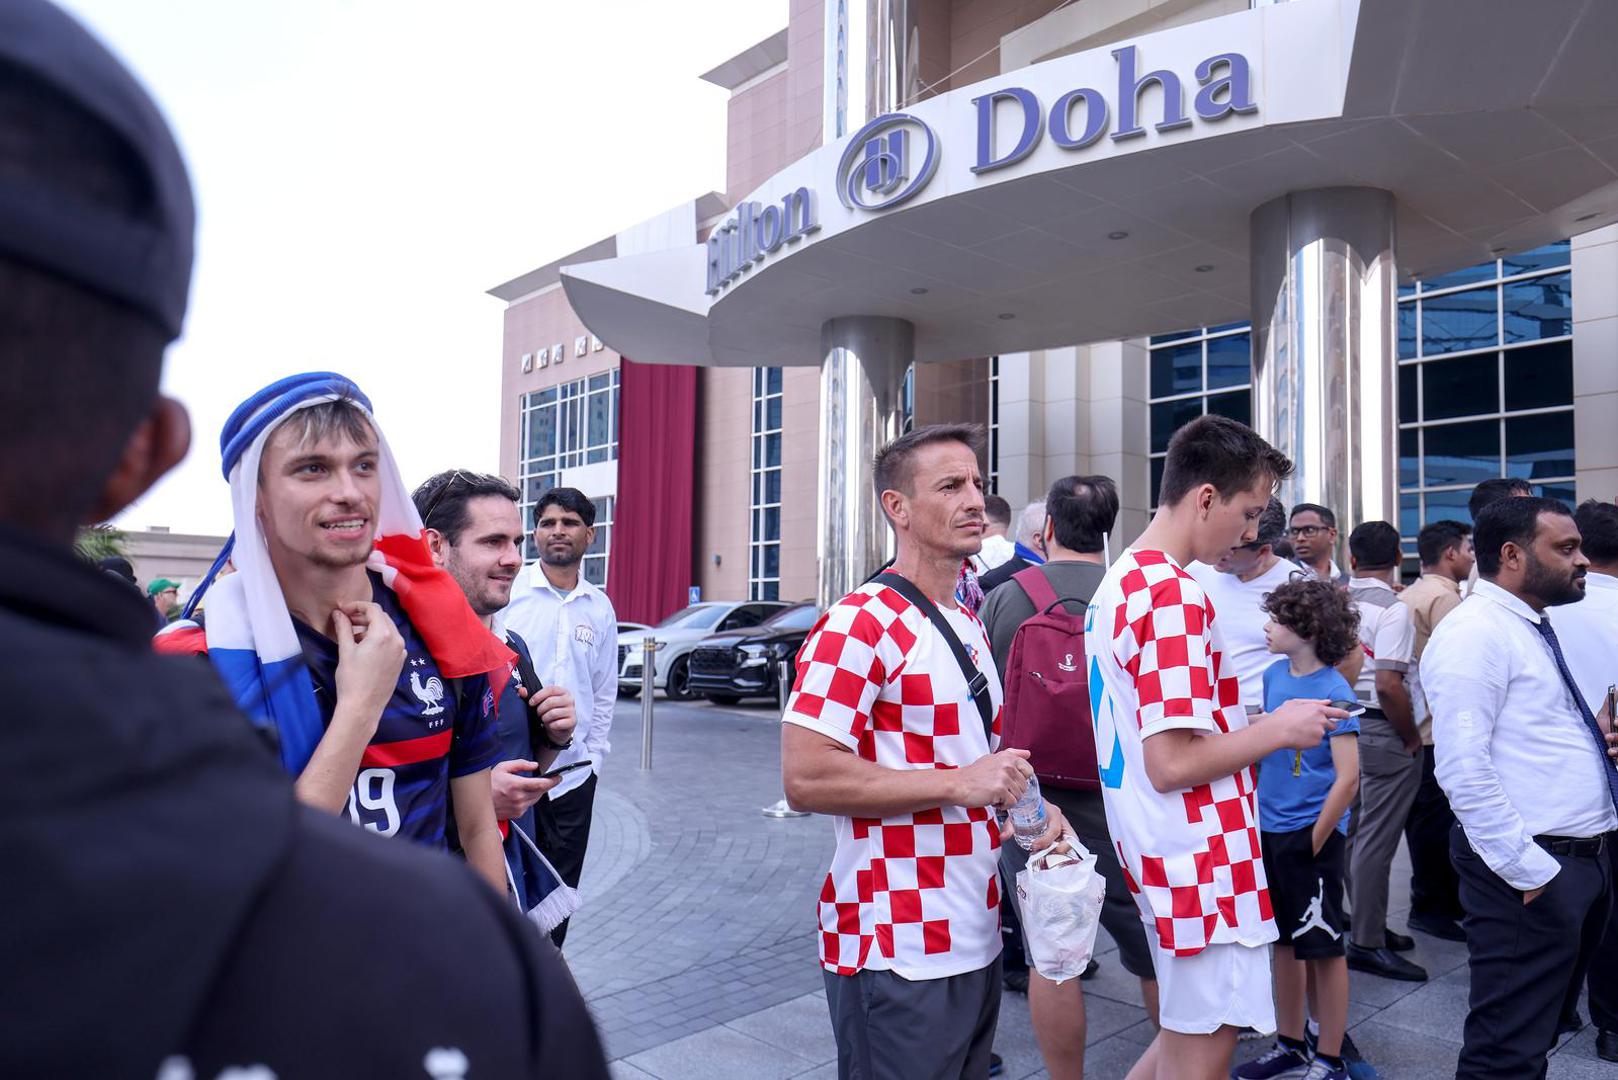 18.12.2022., Doha, Katar - Hrvatska nogometna reprezentacija otputovala je iz hotela Hilton Doha prema zracnoj luci, nakon jucerasnjeg osvajanja broncane medalje u utakmici protiv Maroka, na Svjetskom nogometnom prvenstvu Katar 2022. Photo: Igor Kralj/PIXSELL